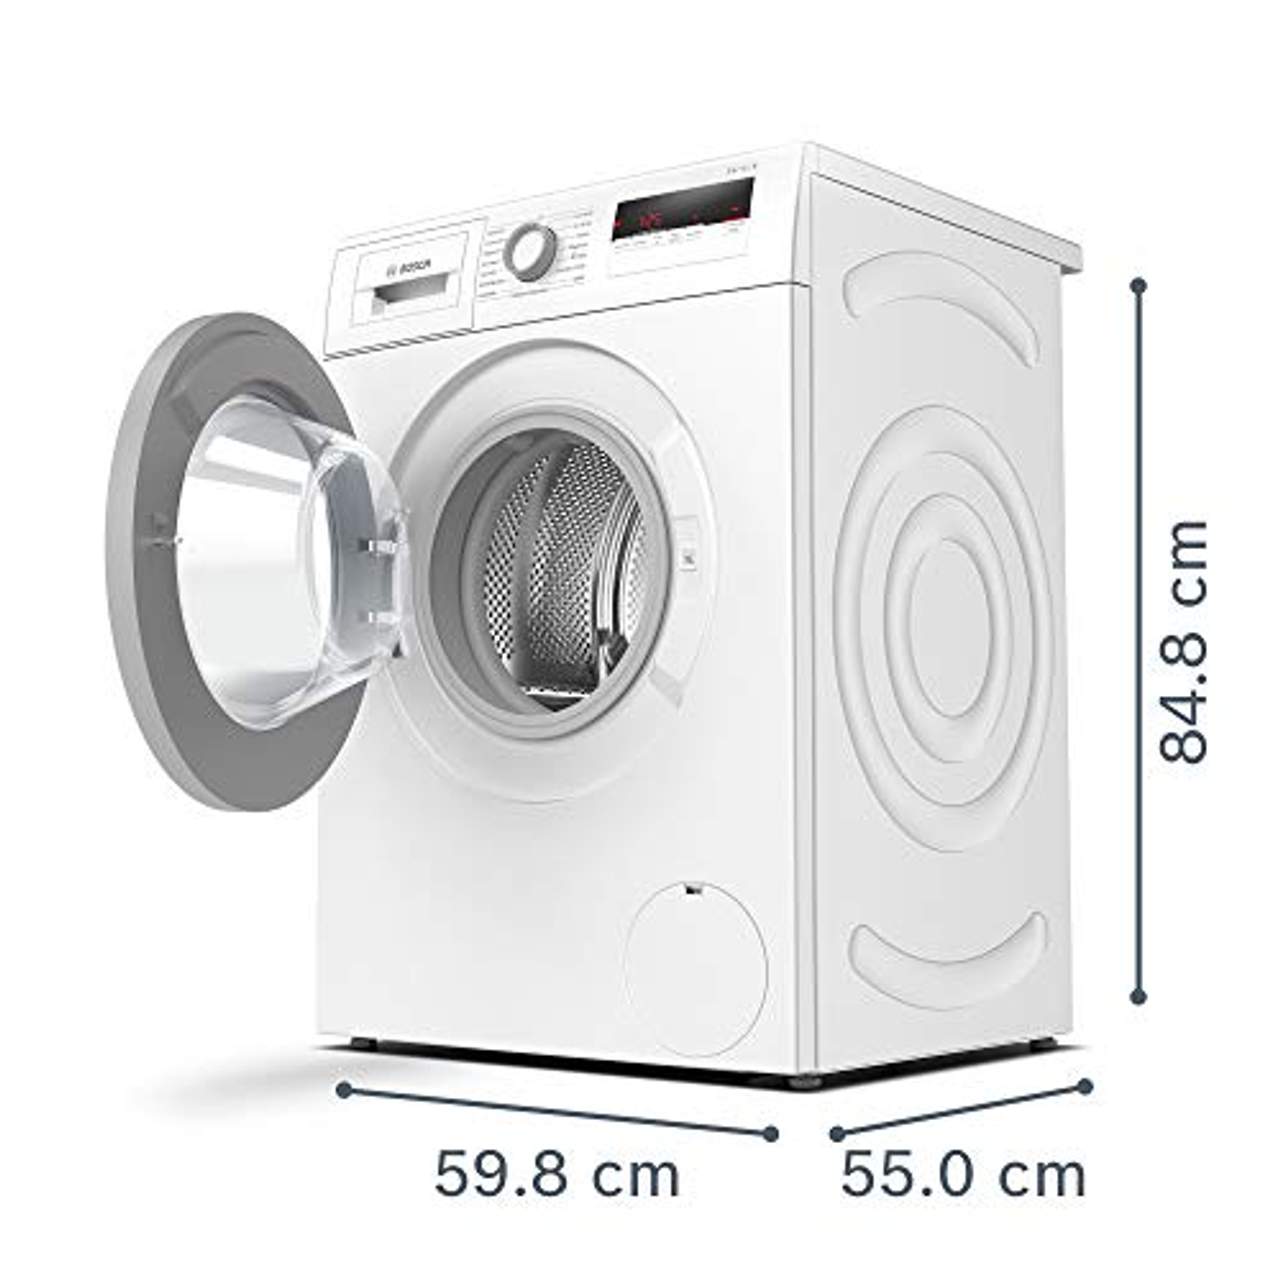 Bosch WAN28122 Serie 4 Waschmaschine Frontlader